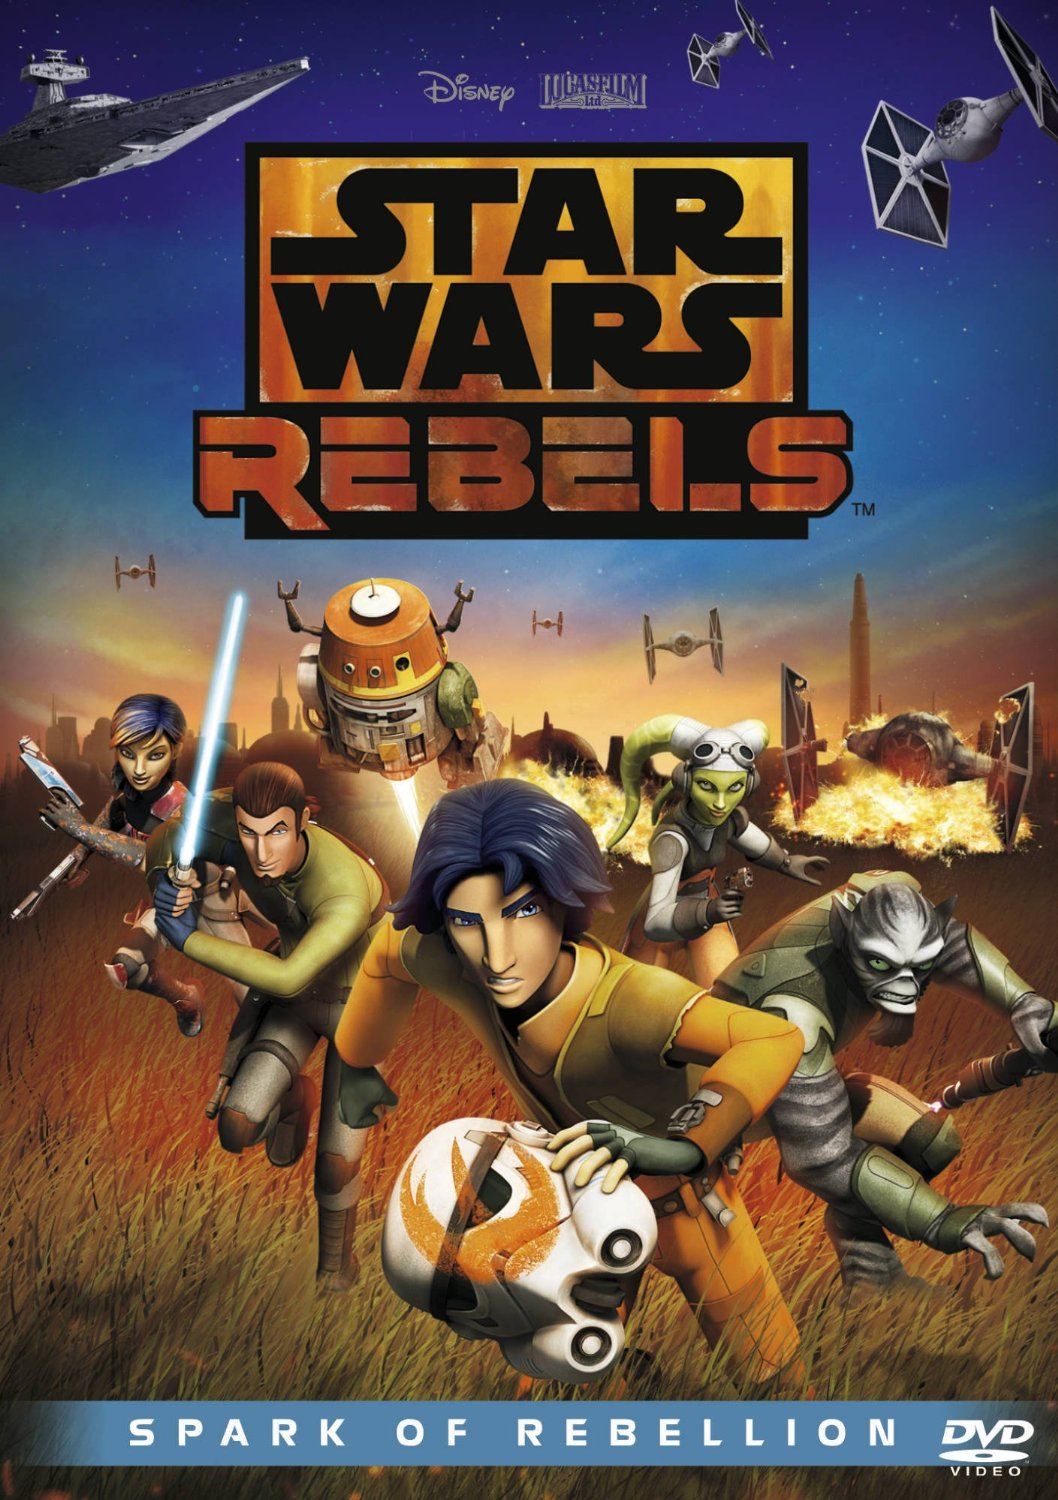 DVD Star Wars -  Rebels la chispa de una rebelión